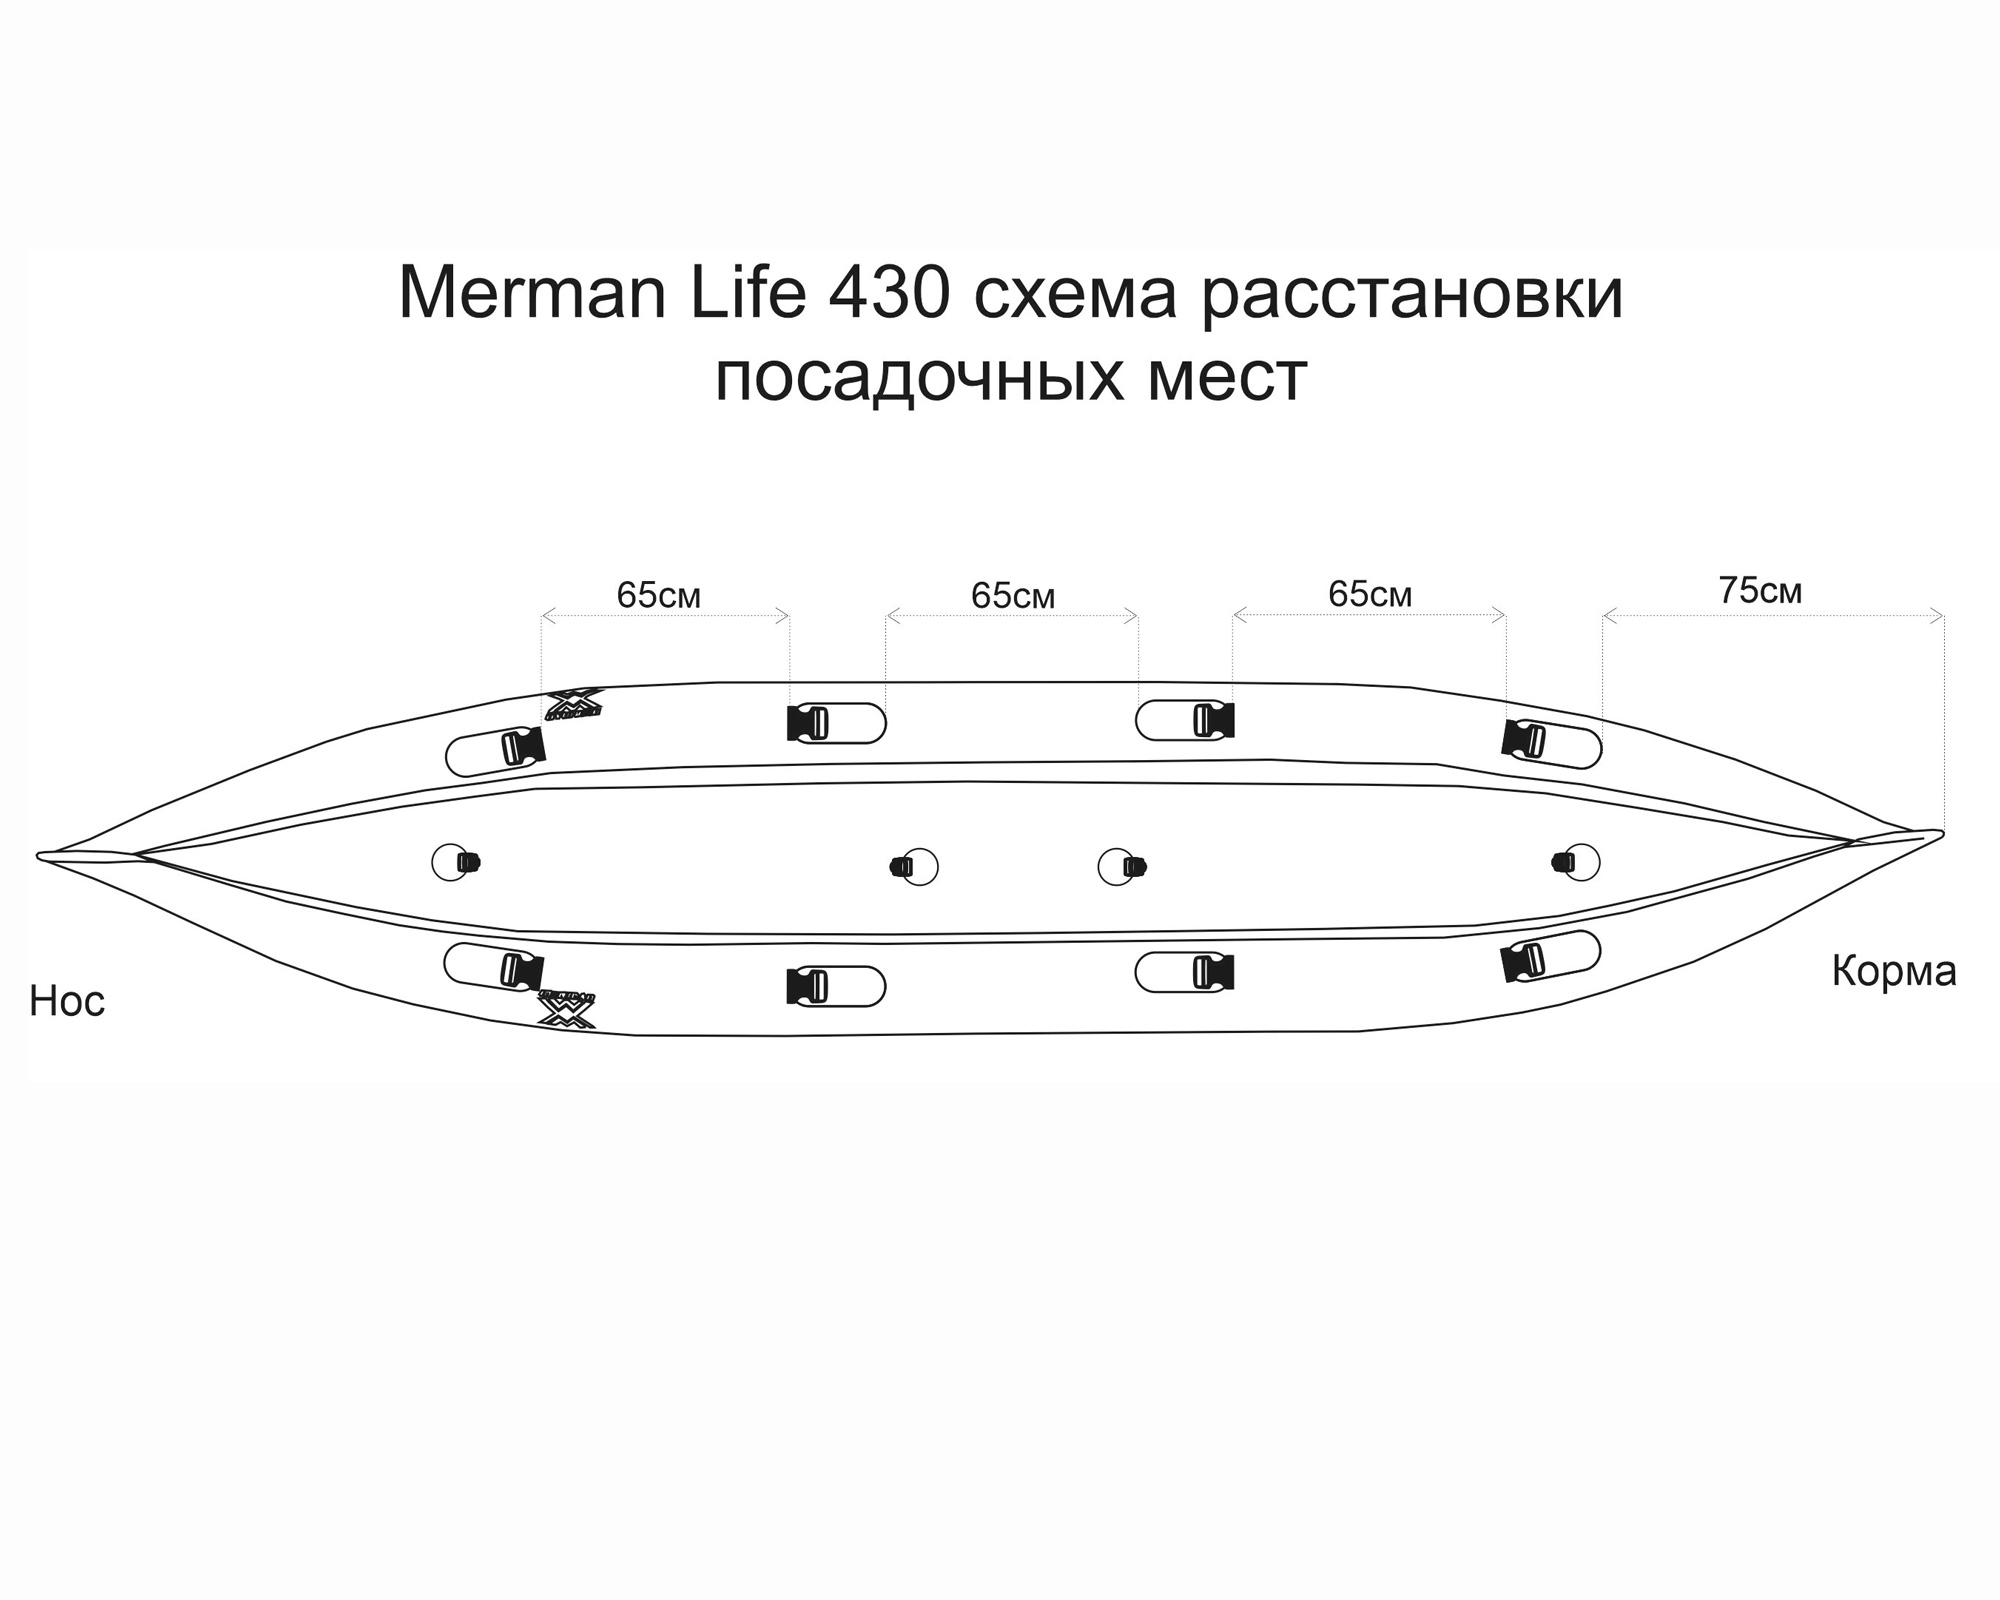 Merman Life 430/2 двухместная байдарка c фартуком, цвет серый